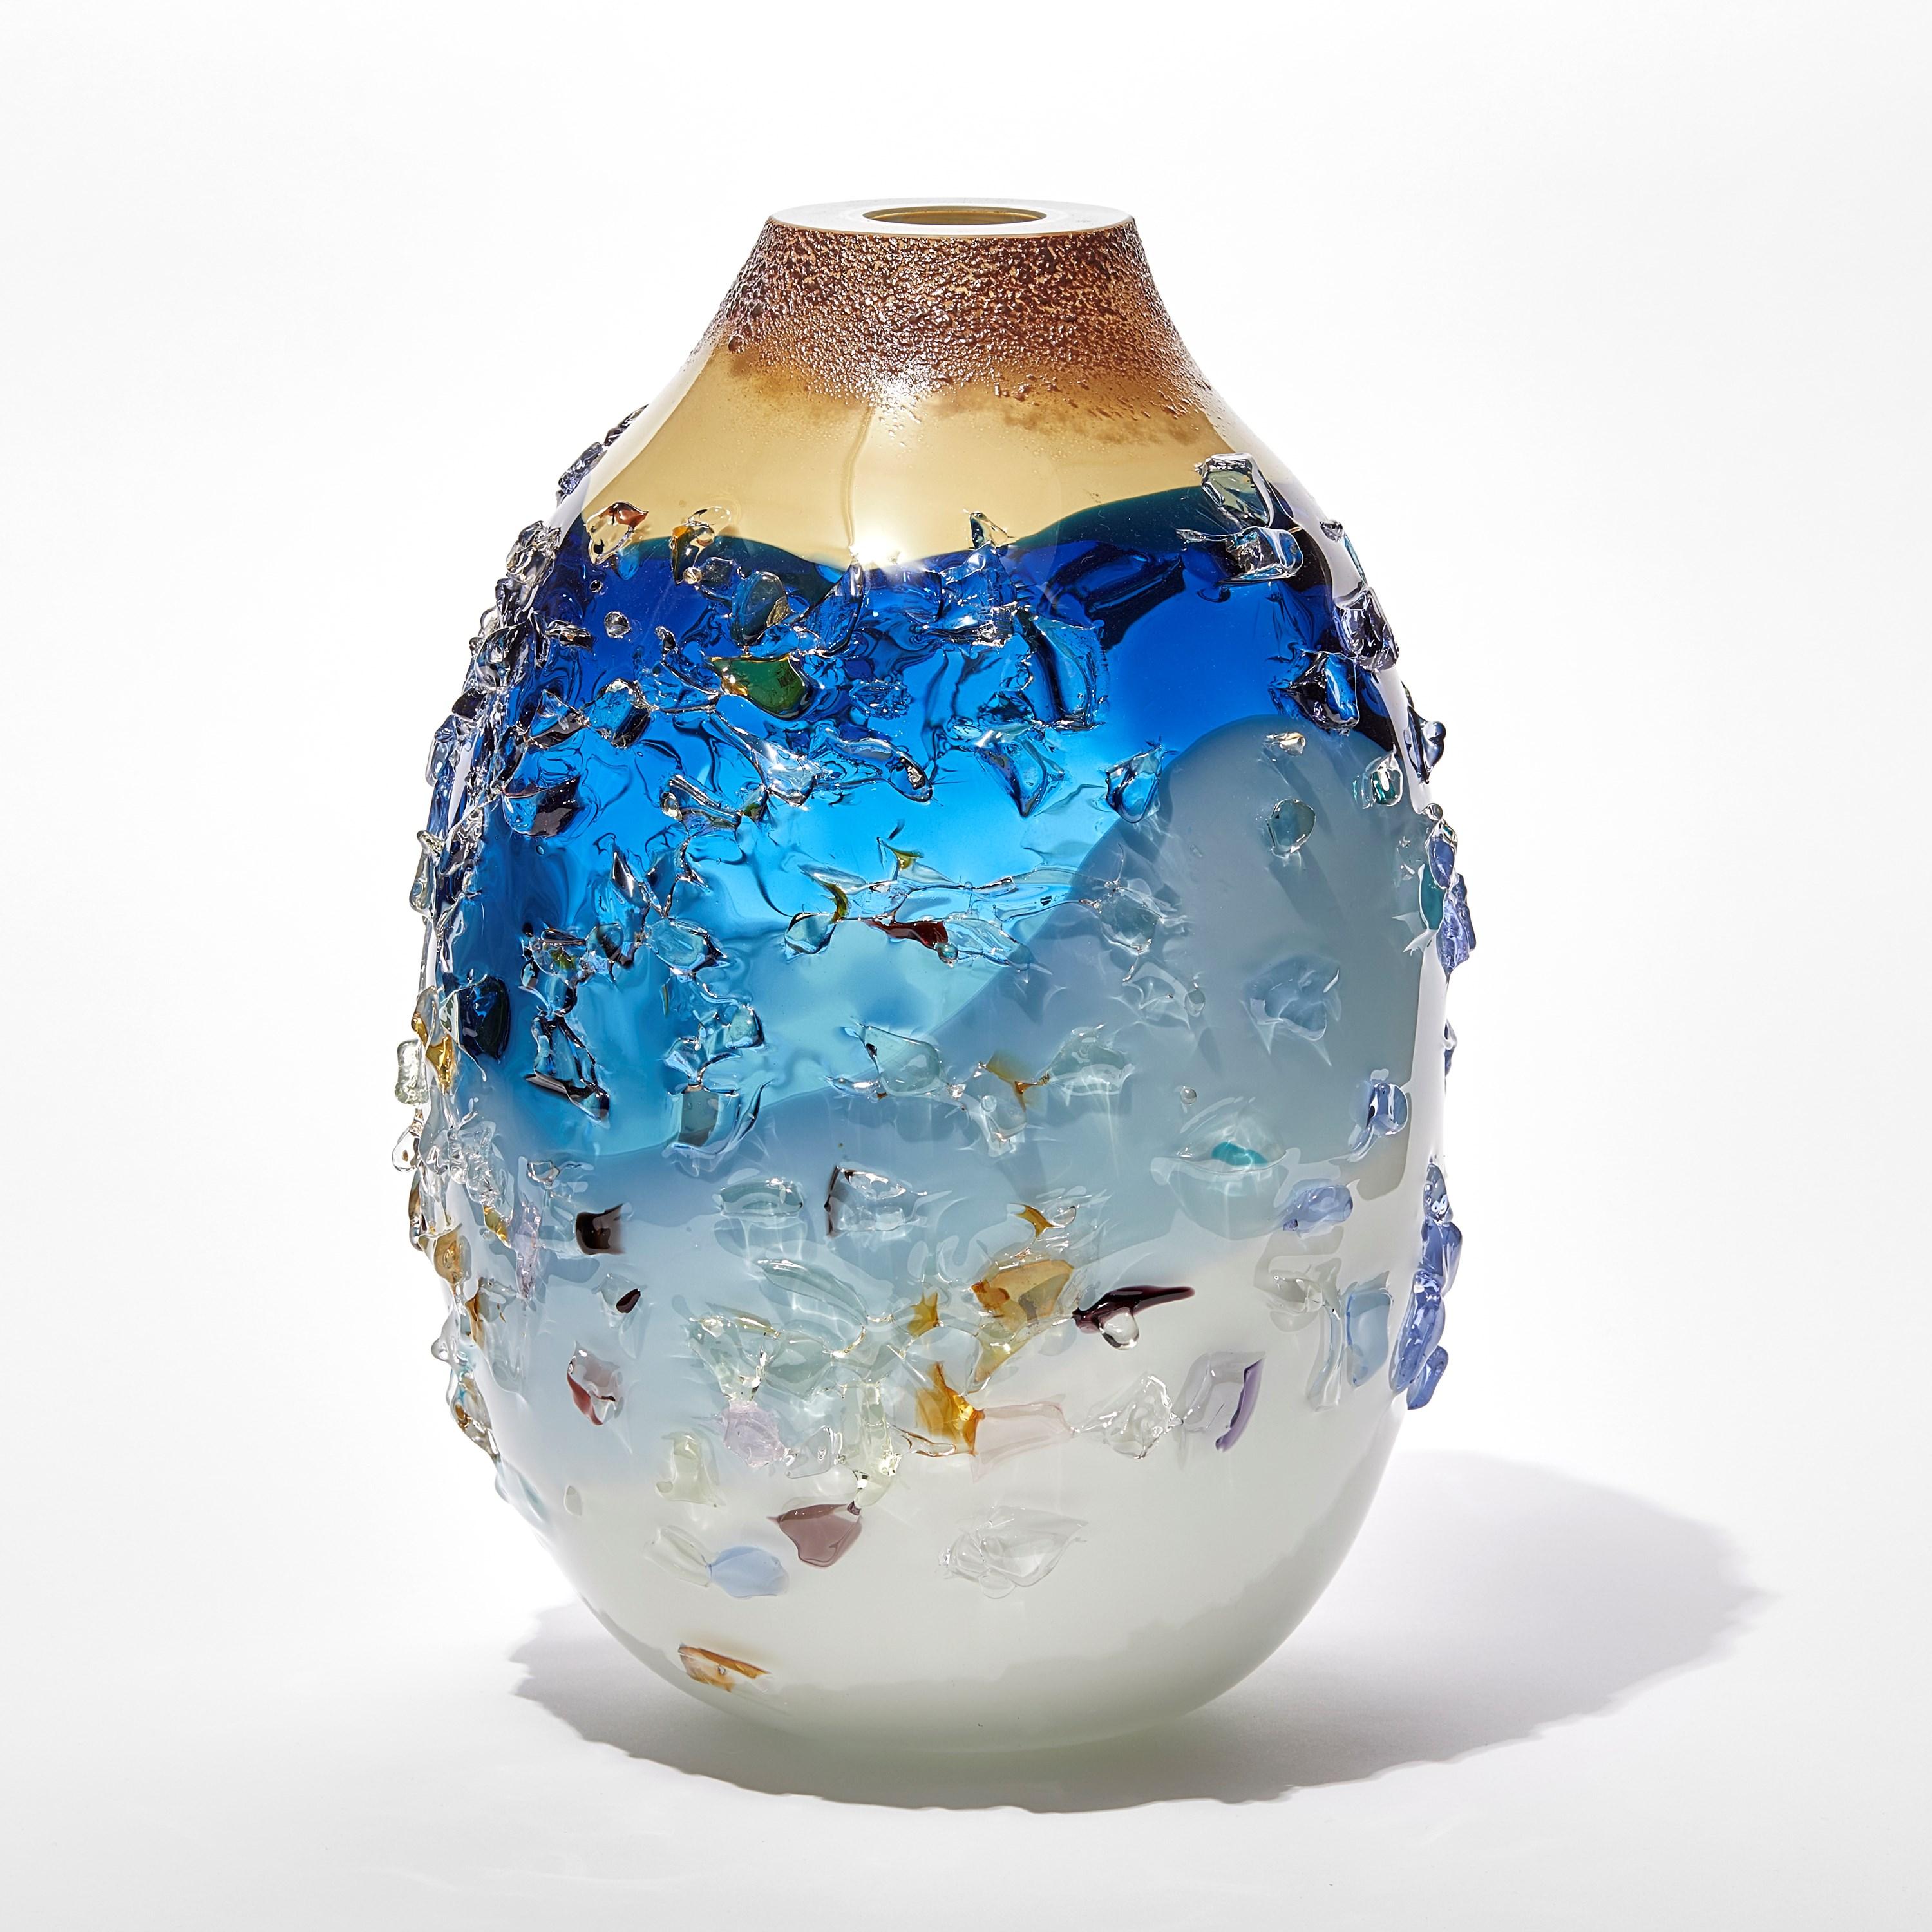 Sakura TFO23028 ist eine einzigartige Vase aus mundgeblasenem, skulpturalem Kunstglas in zartem Blau, Aqua, Creme und Mehrfarben, überzogen mit einer organischen Glasscherbenverzierung des niederländischen Künstlers Maarten Vorlijk. Das Stück ist